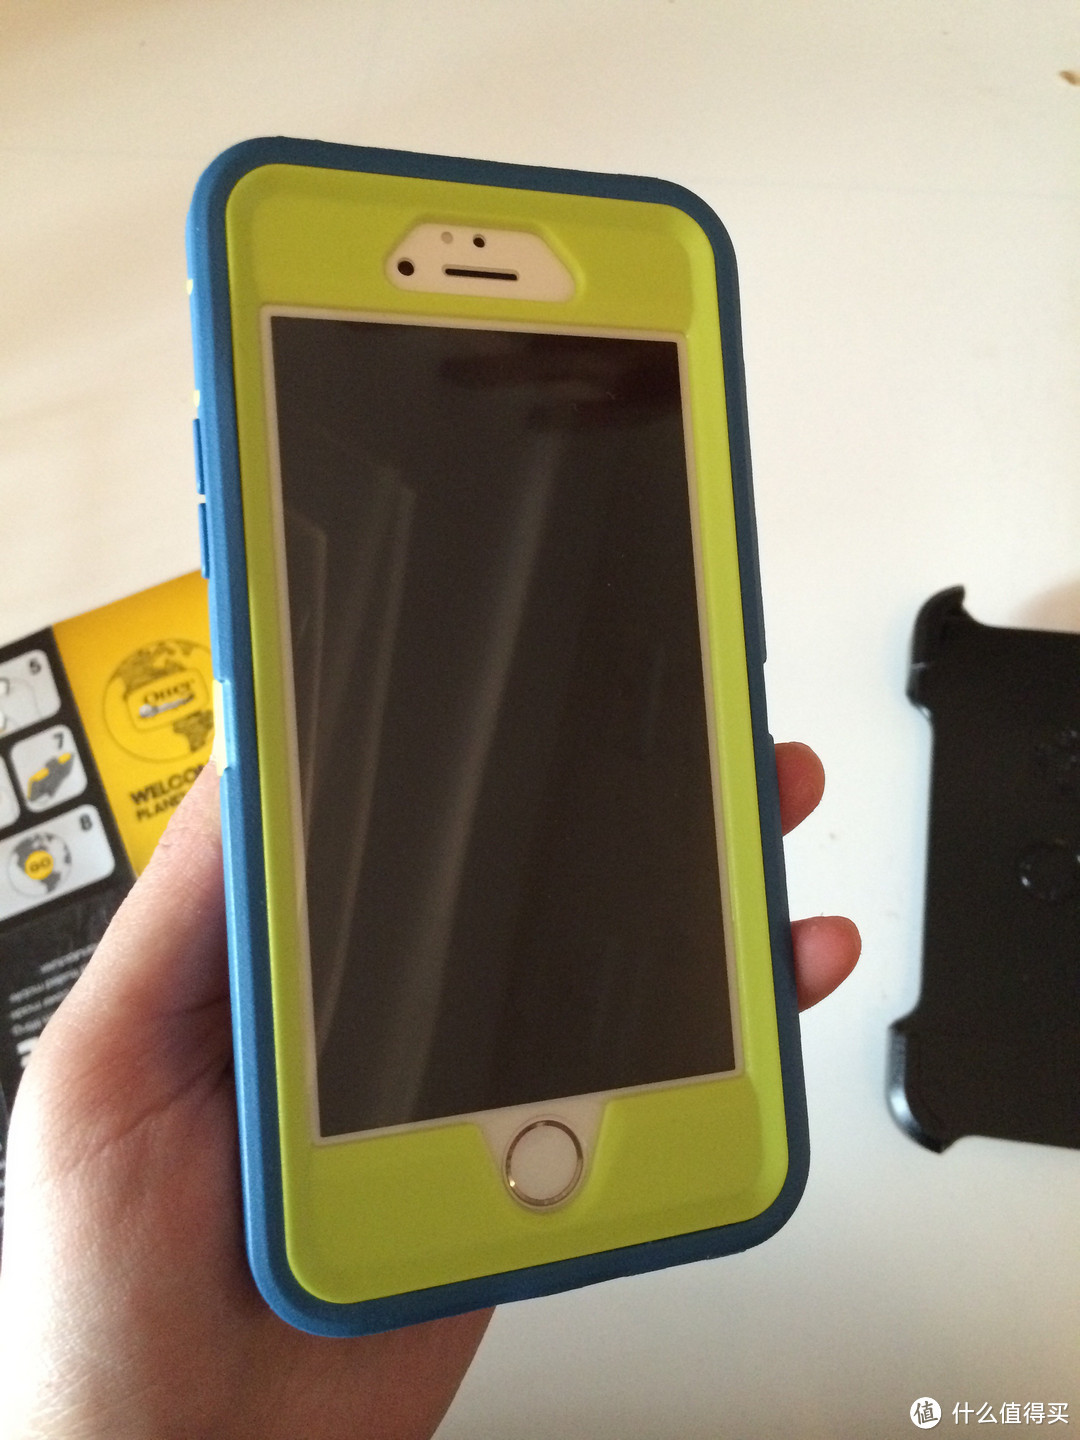 OTTER BOX 防御者 iPhone 6 防摔壳 — 没有一点点防备，你就这样出现，砸碎了我的玻璃膜，伤害了我的少女心